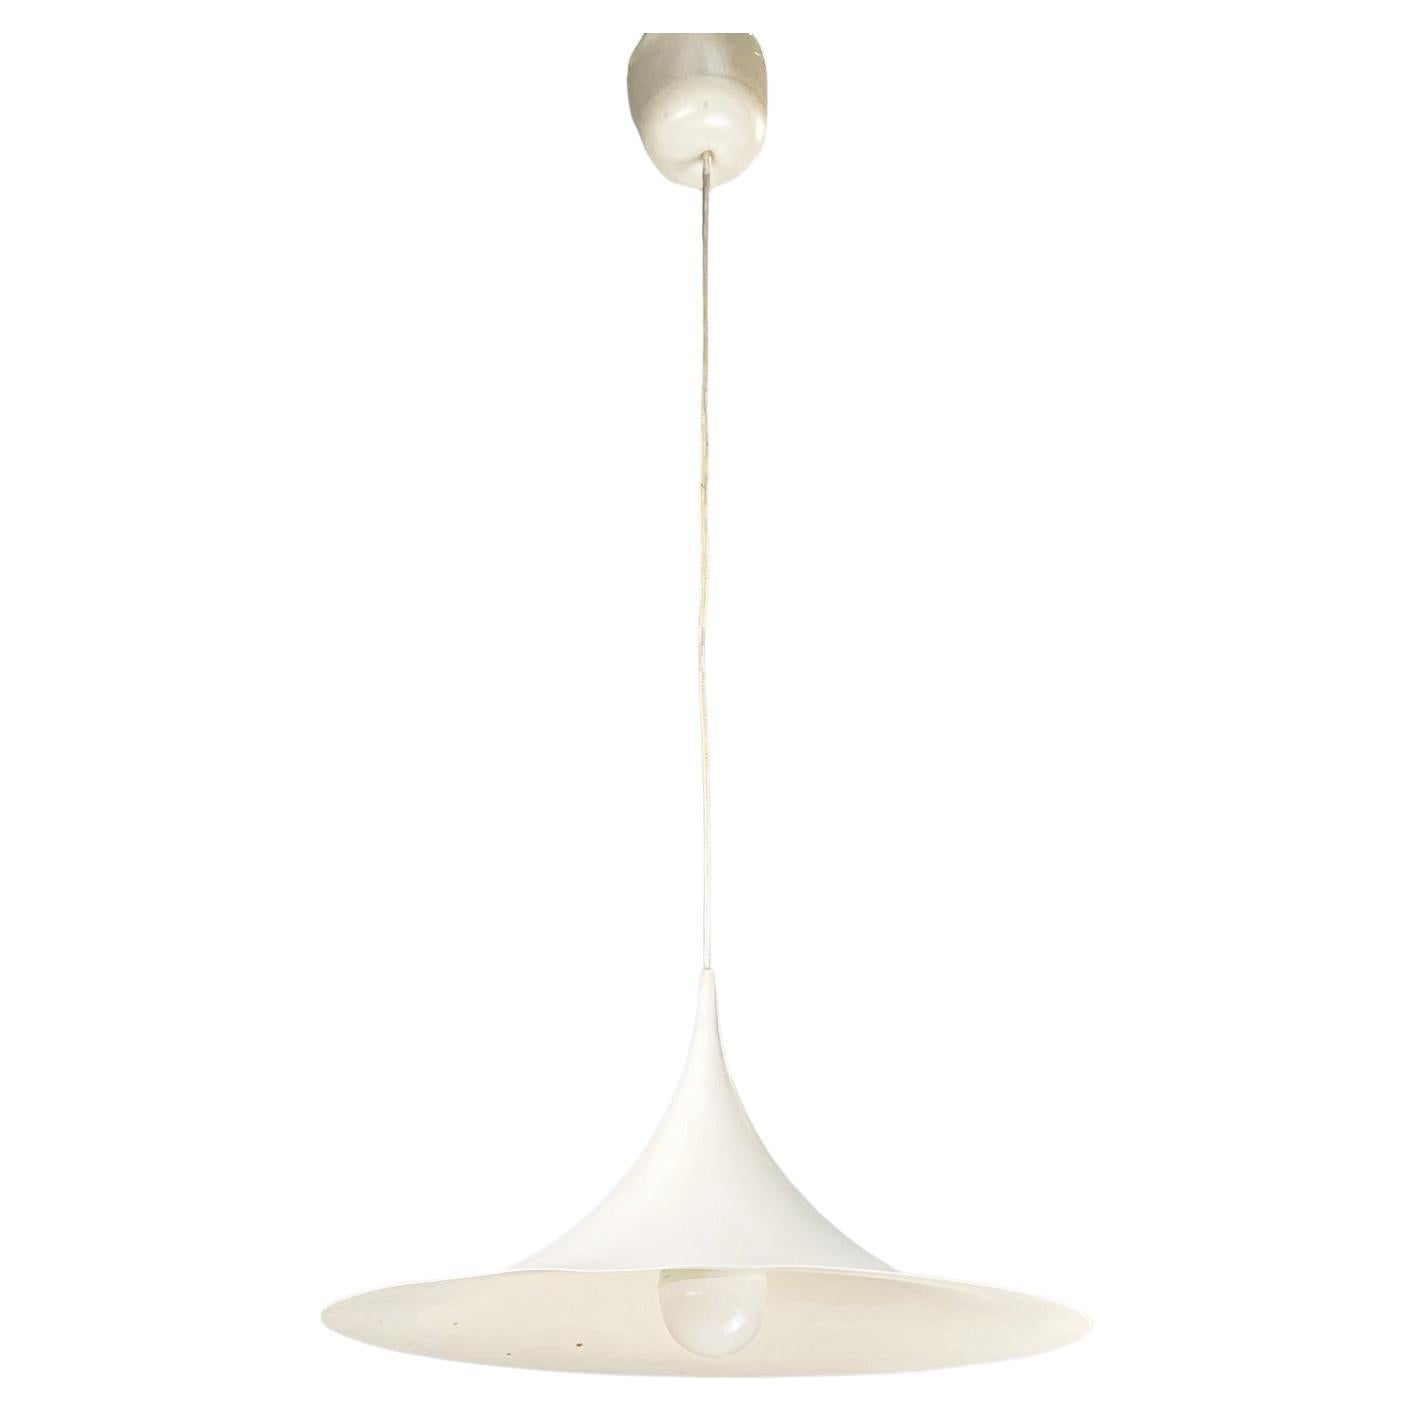 Italian Modern Ceiling Lamp Semi by Bonderup & Thorup for Fog & Mørup, 1970s For Sale